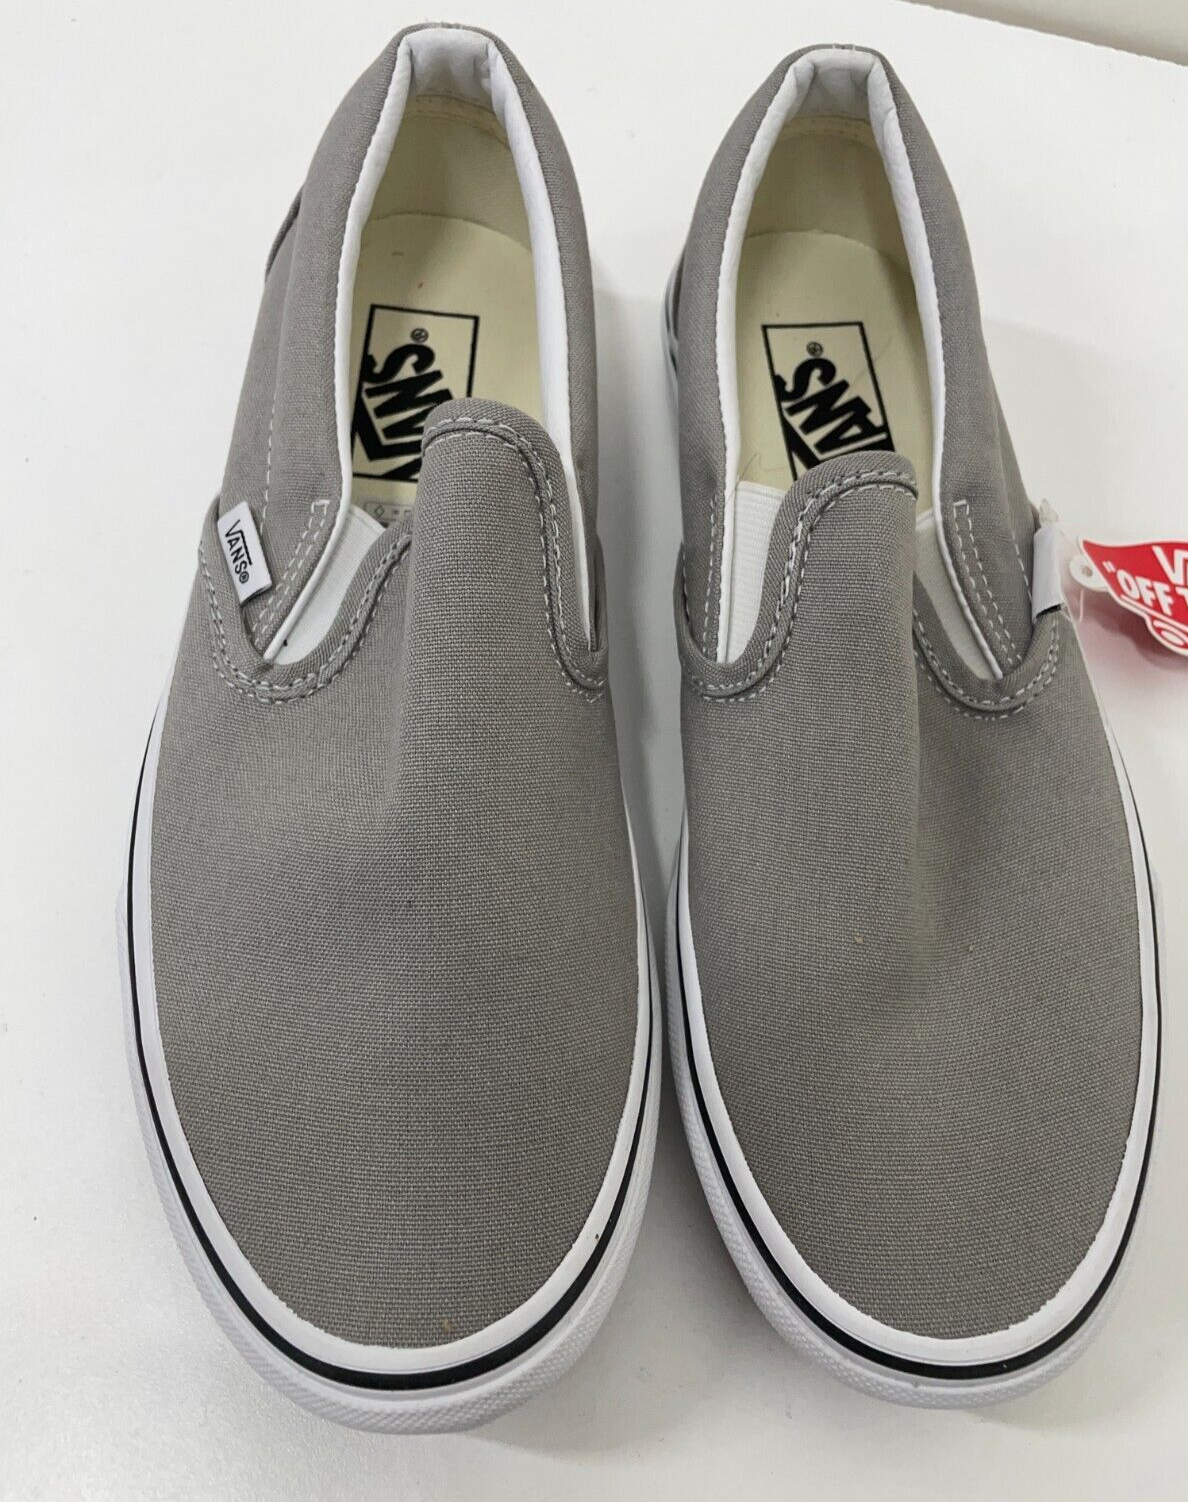 Vans Men's 6.5 Classic Slip-On Shoe Drizzle/True White Unisex Low Profile 508731